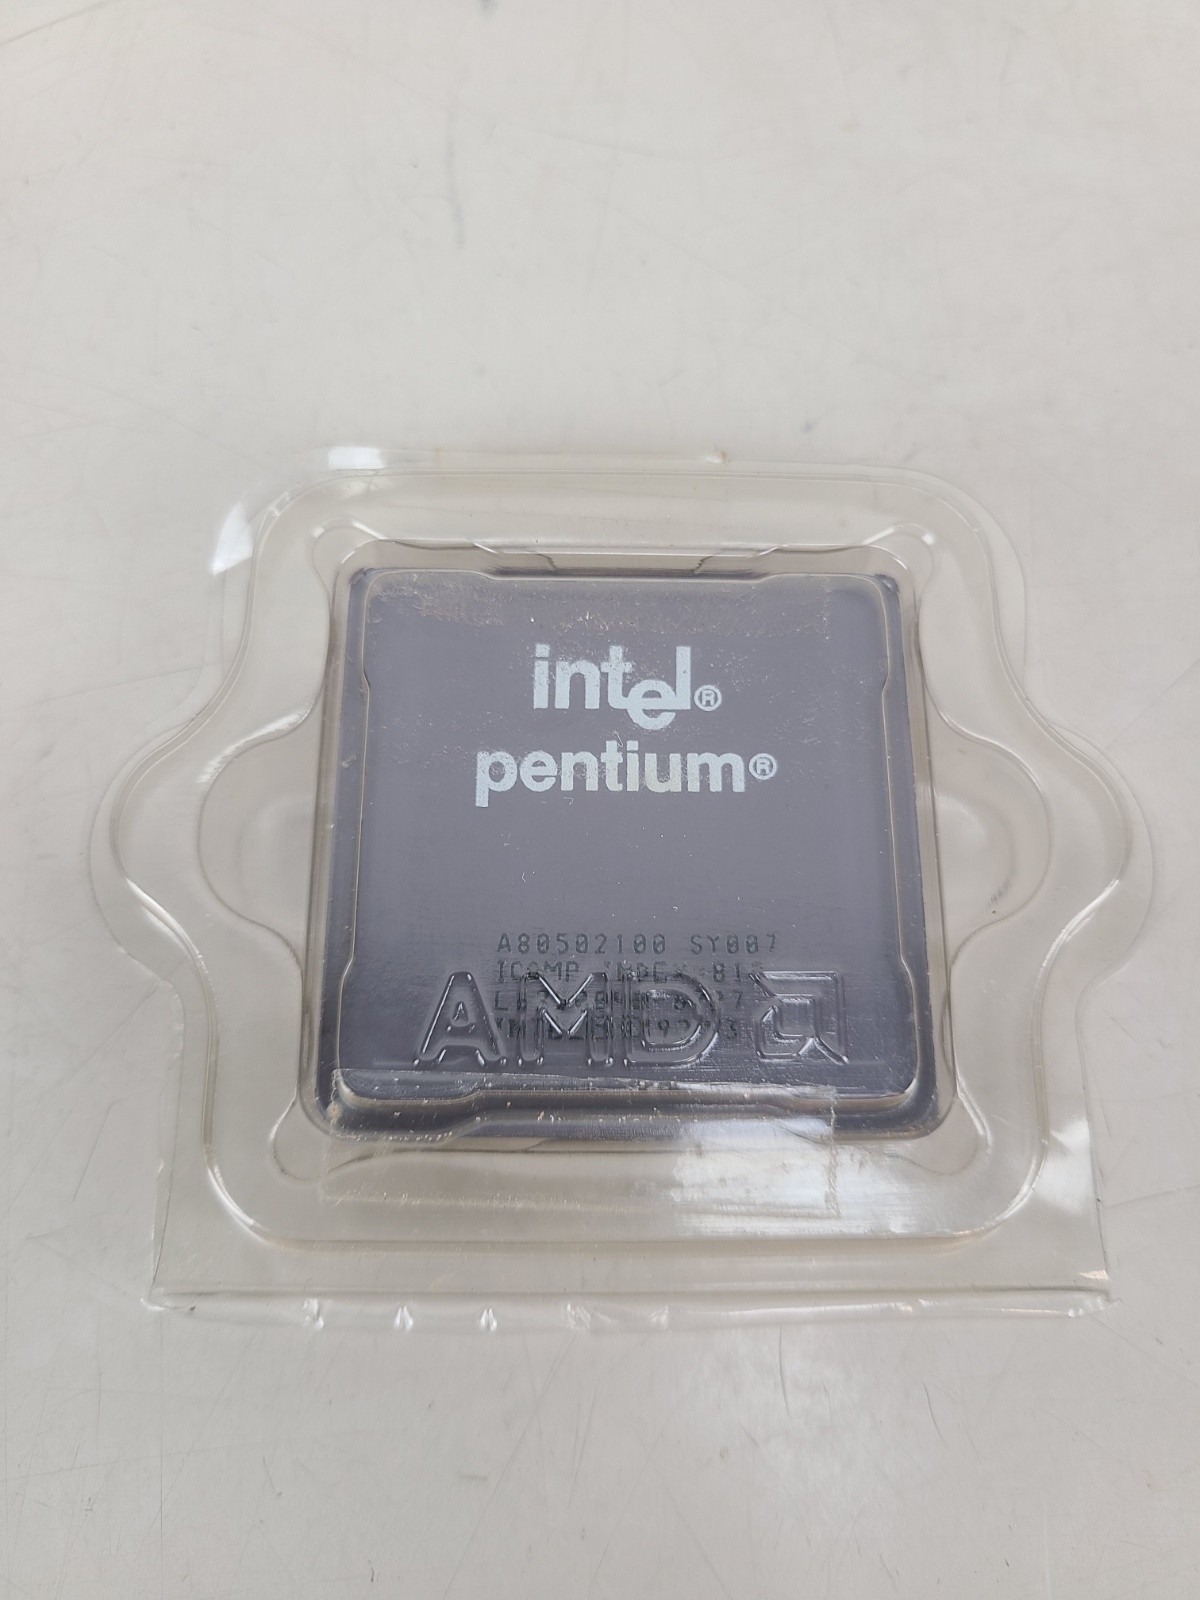 Intel Pentium 100 MHz CPU Processor SY007